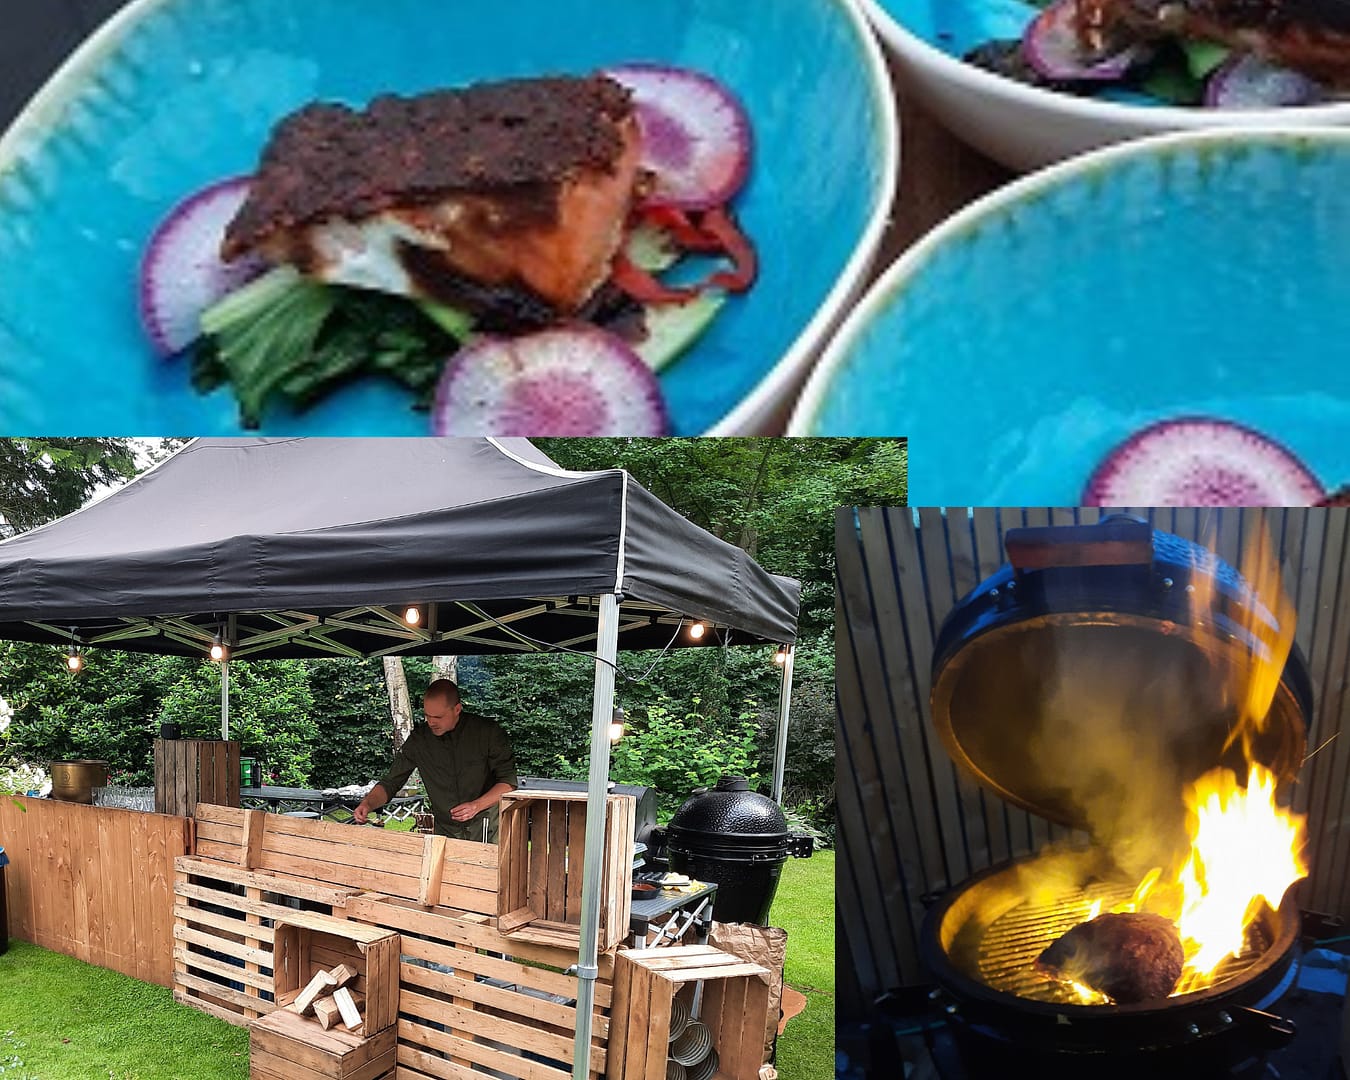 Barbecue foto's voor een tuin barbecue bruiloft bedrijfsfeest